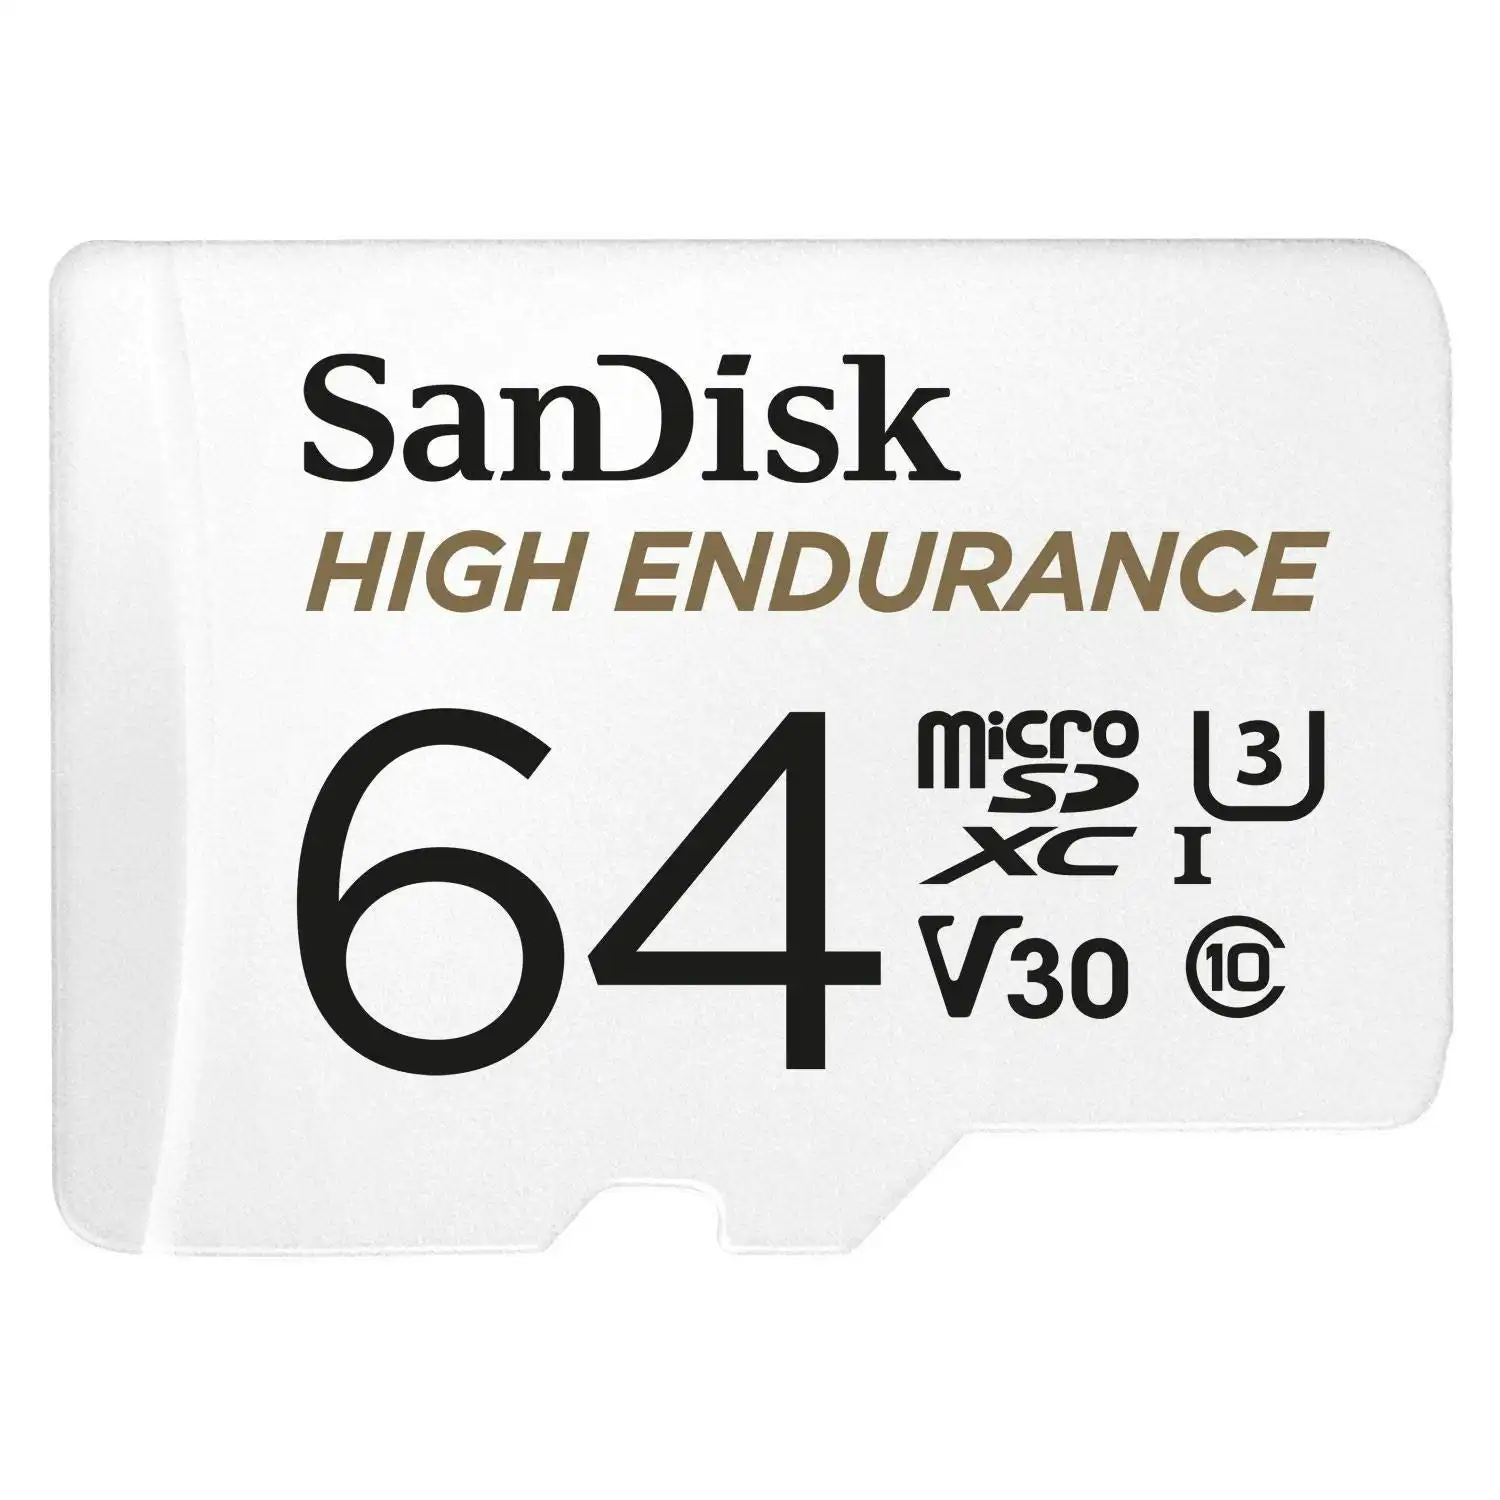 Sandisk High Endurance Microsdhc Card Sqqnr 64g Uhs I C10 U3 V30 100mb/S R 40mb/S W Sd Adaptor Sdsqqnr 064g Gn6ia